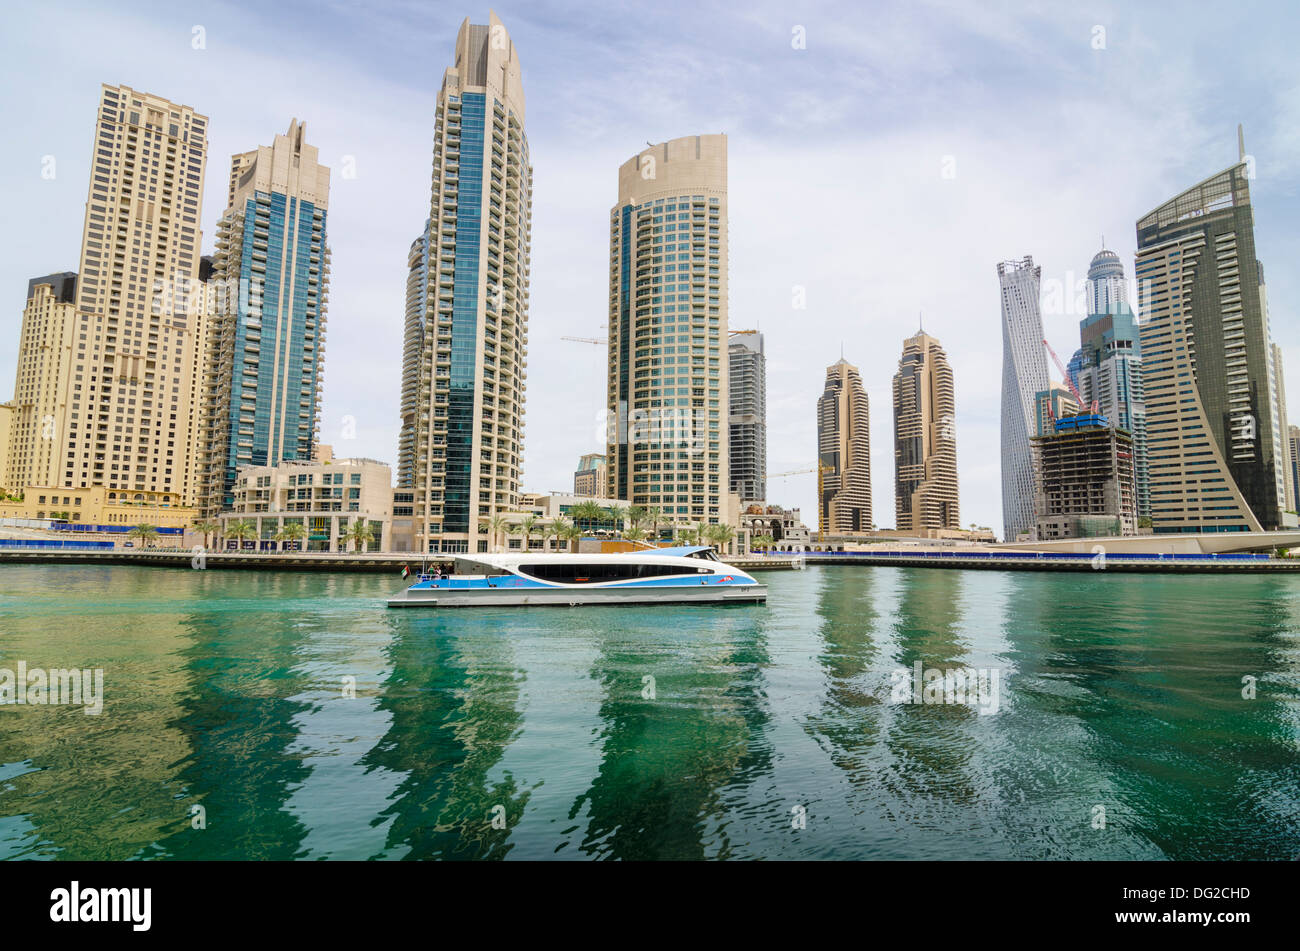 The RTA Dubai Ferry in Dubai Marina, Dubai, UAE Stock Photo